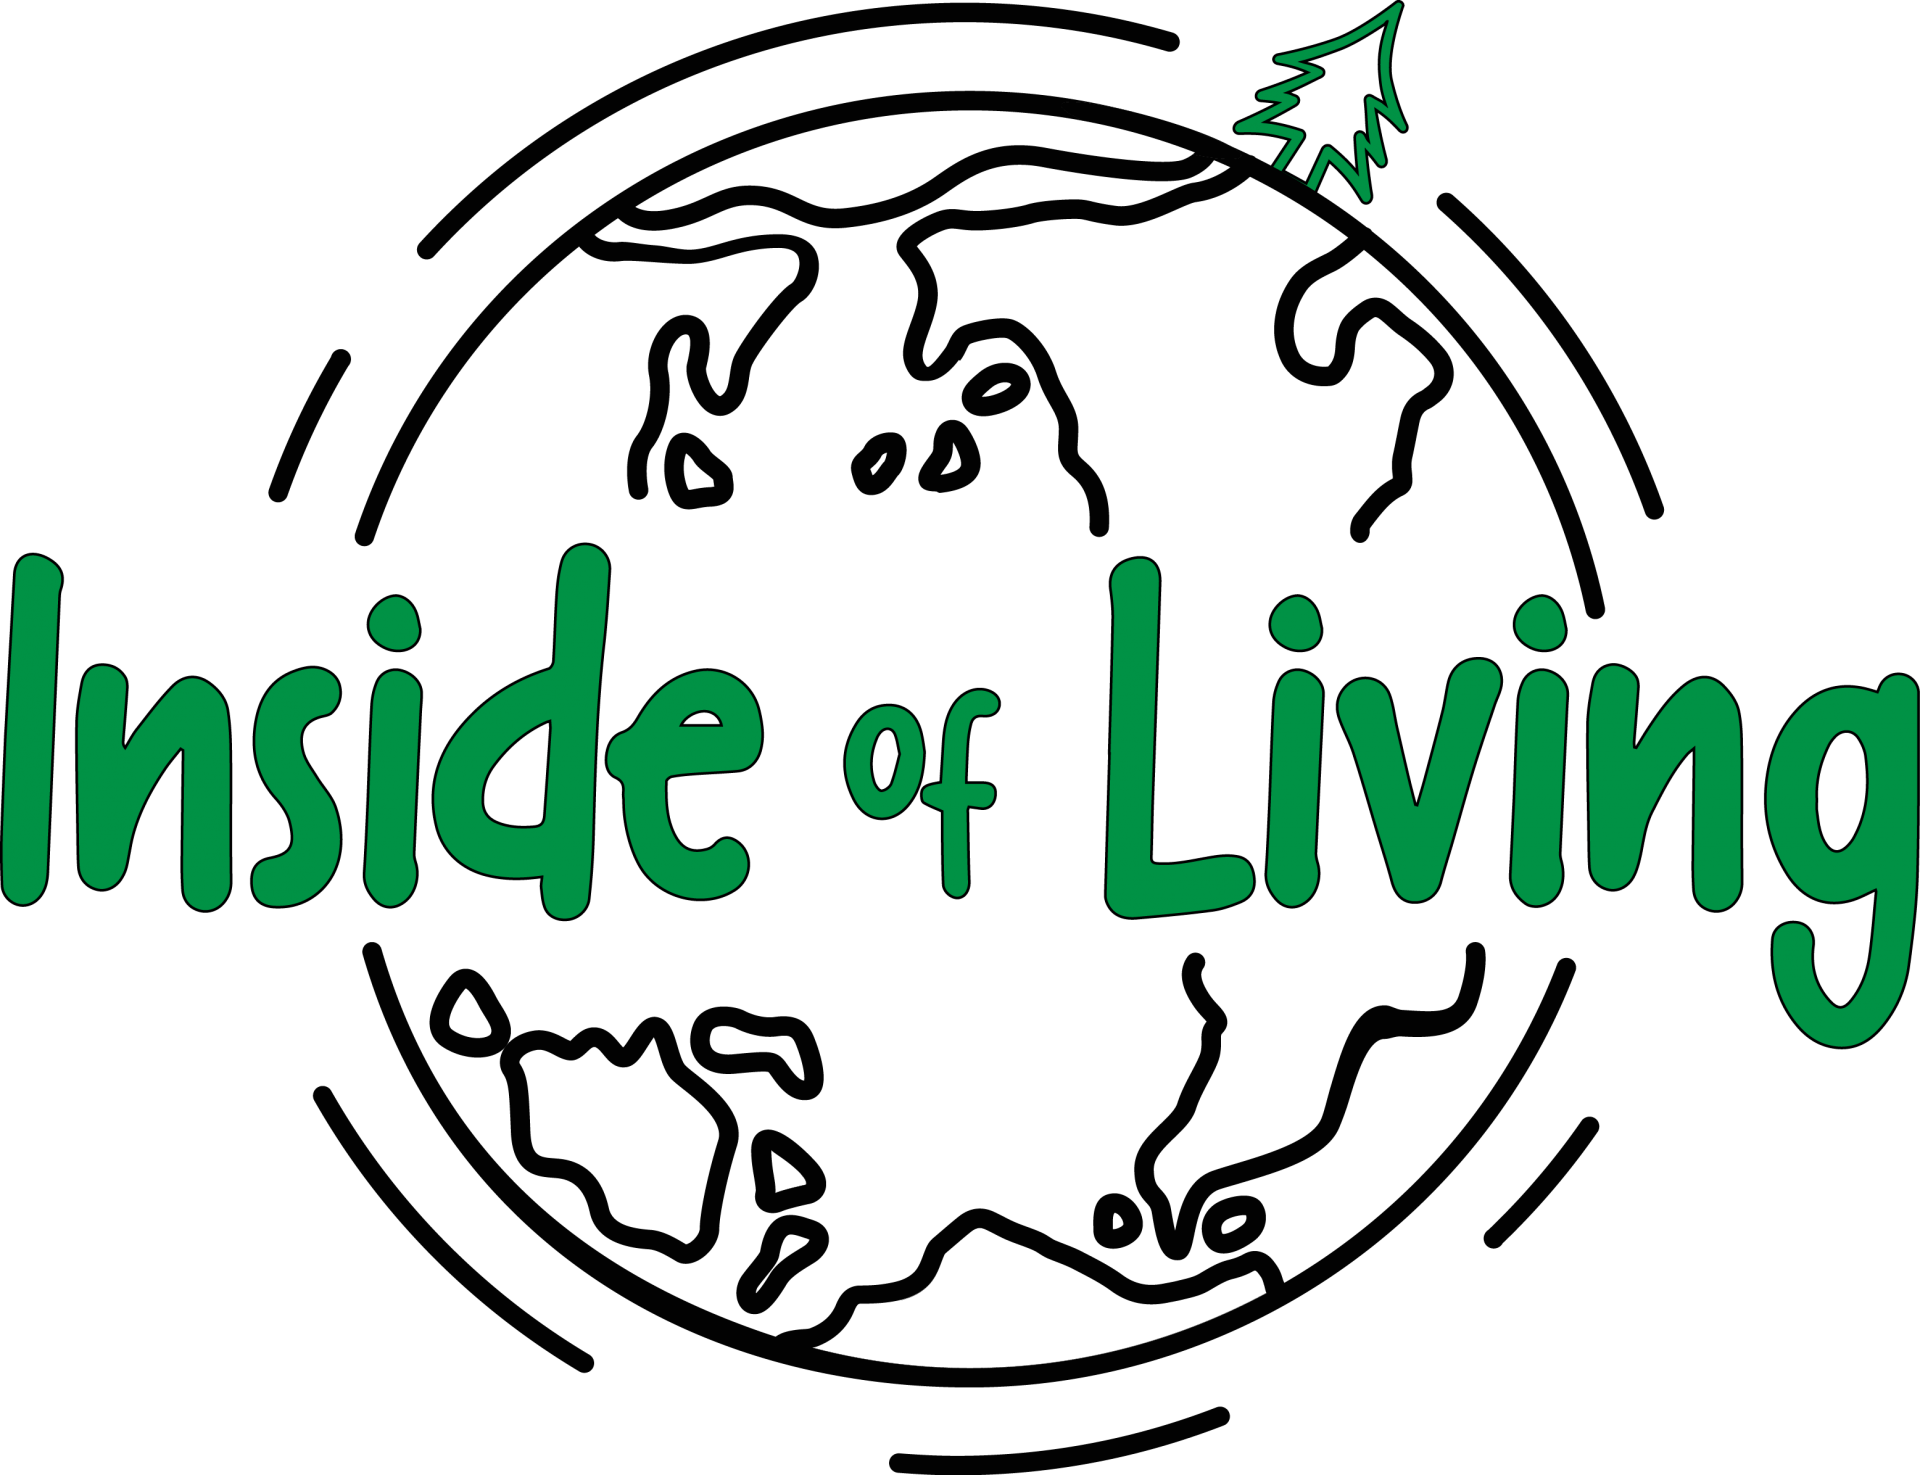 Логотип Inside of living